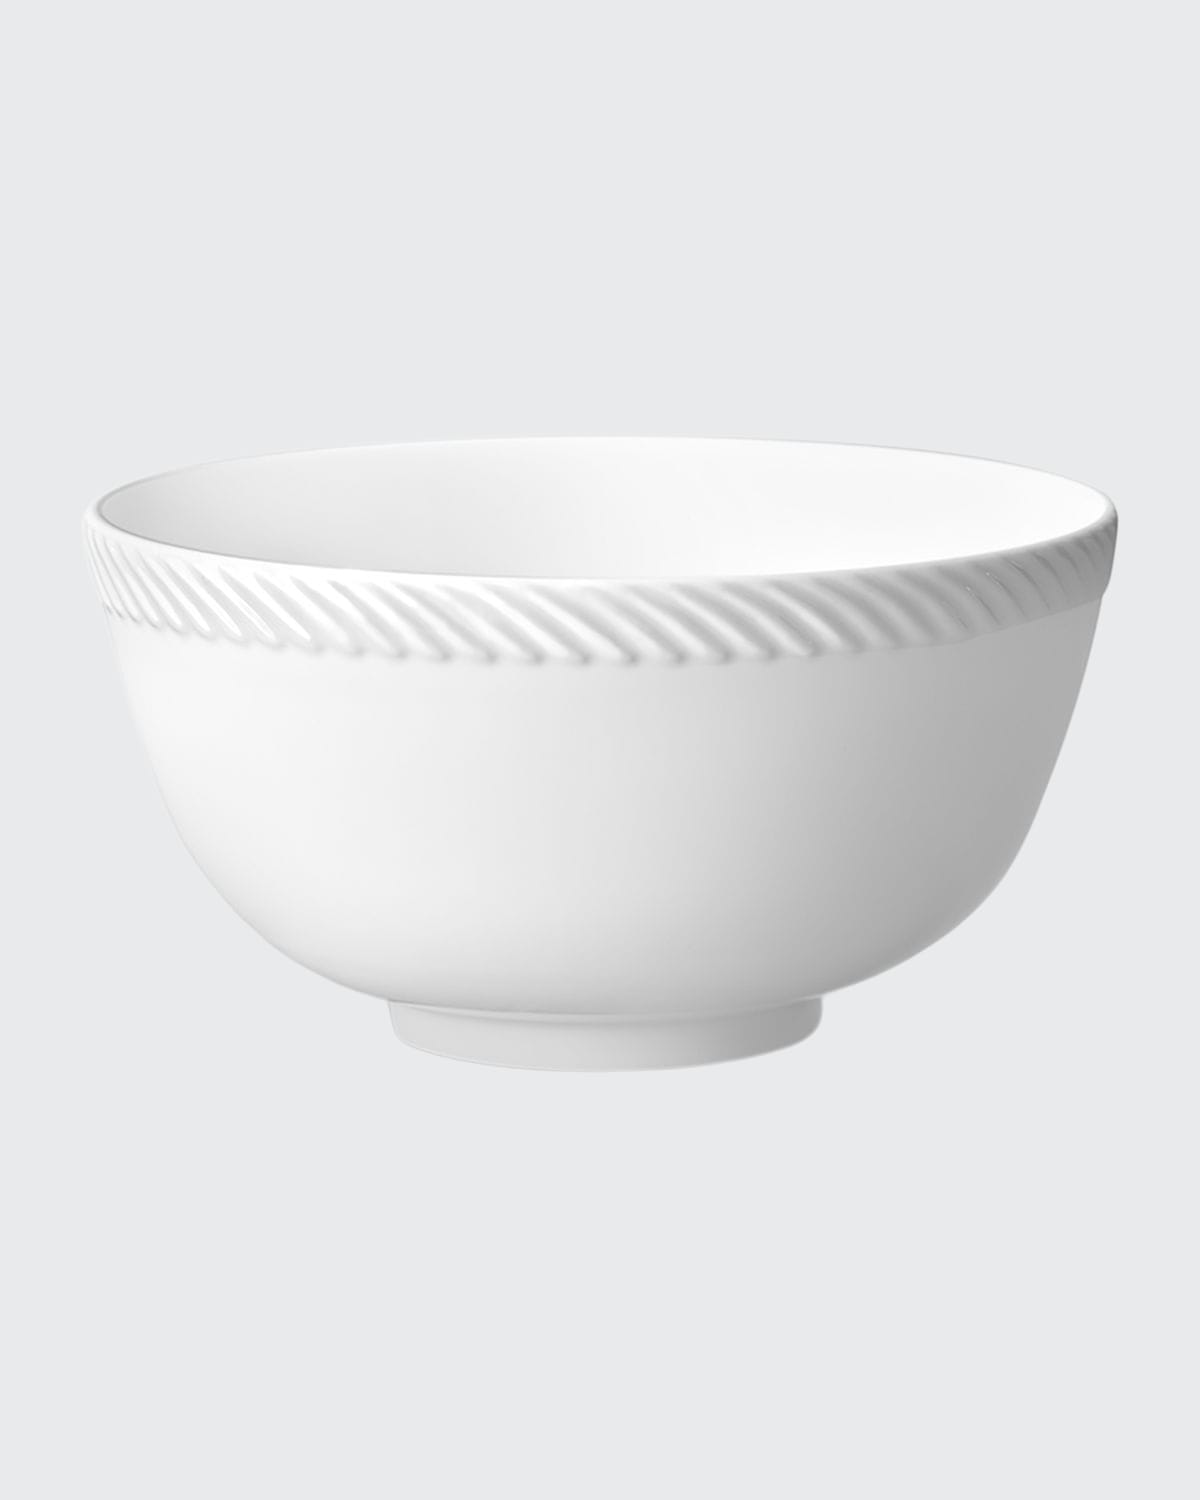 L'objet Corde Cereal Bowl, White